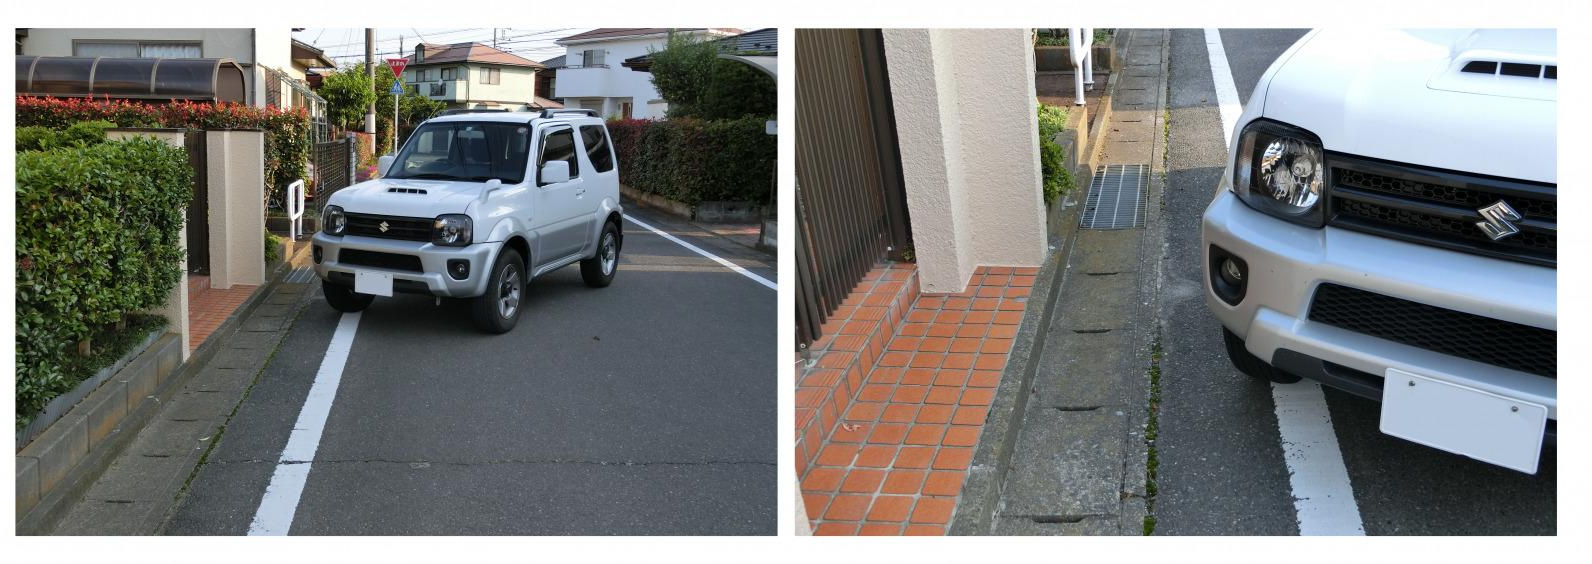 Block 画像 バック駐車 車庫入れで簡単にまっすぐスマートに決めるコツは目線とハンドル操作 Clicccar Com